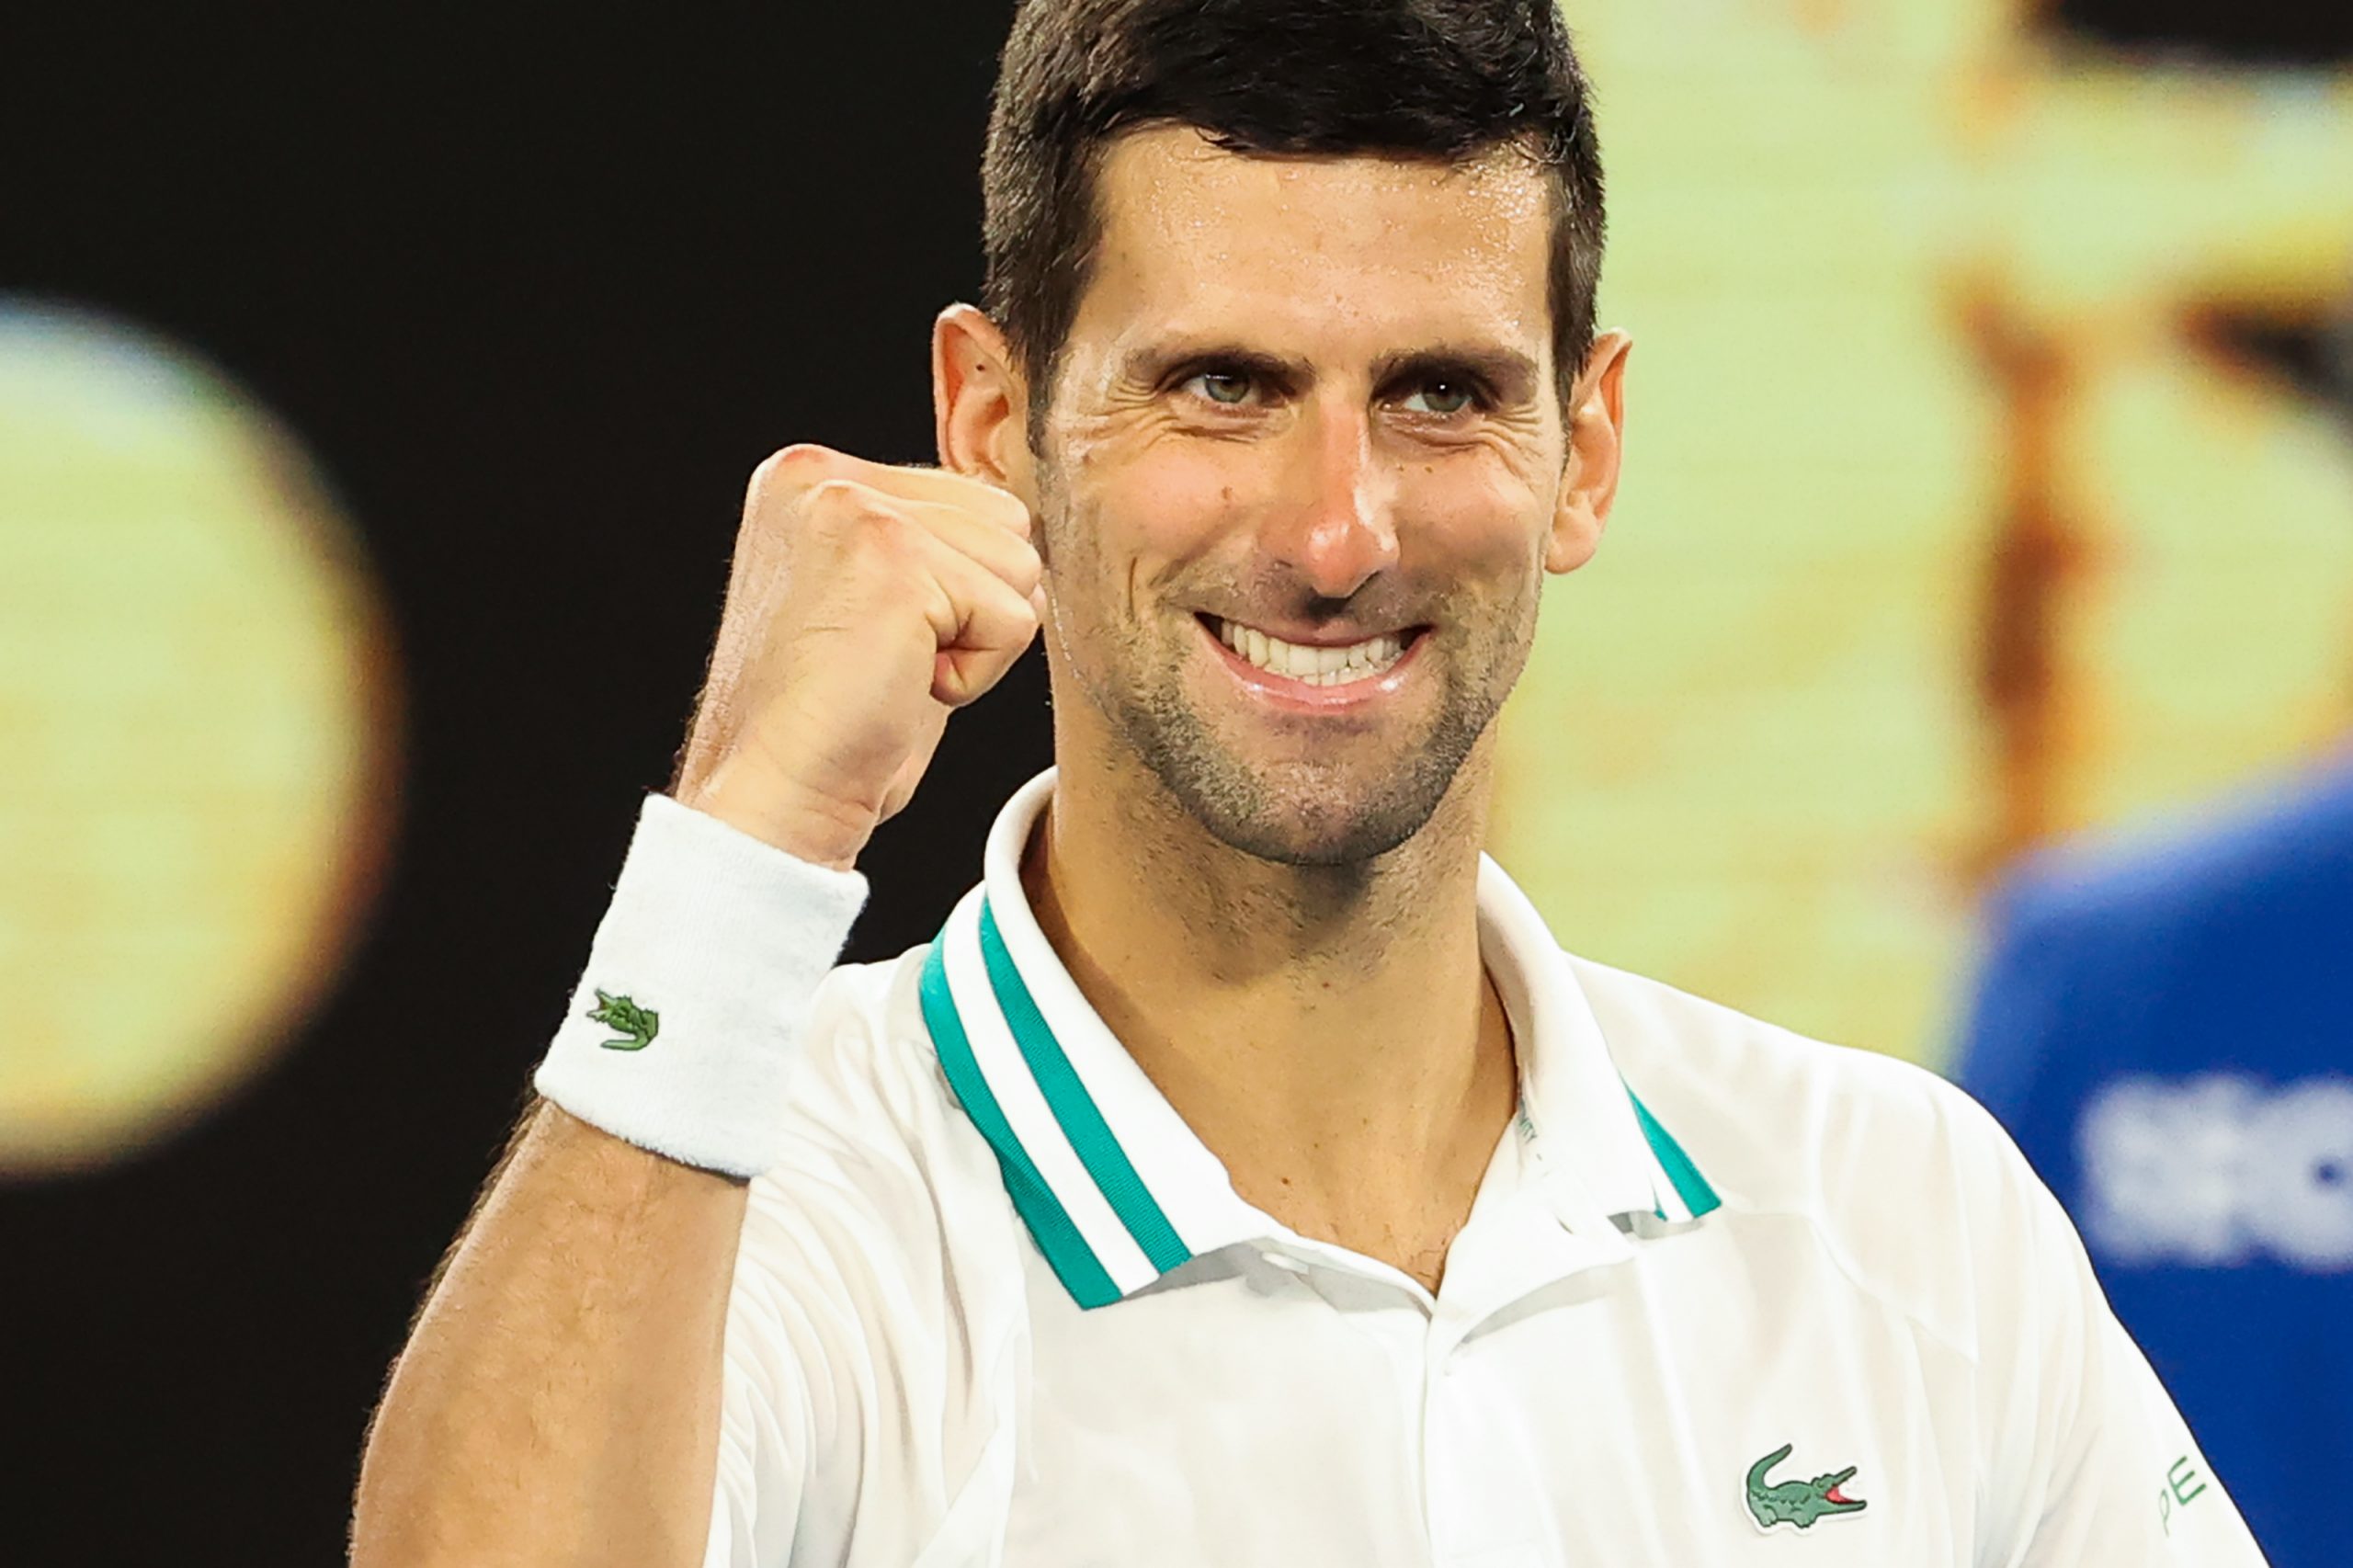 Australian Open Djokovic Karatsev Melbourne final